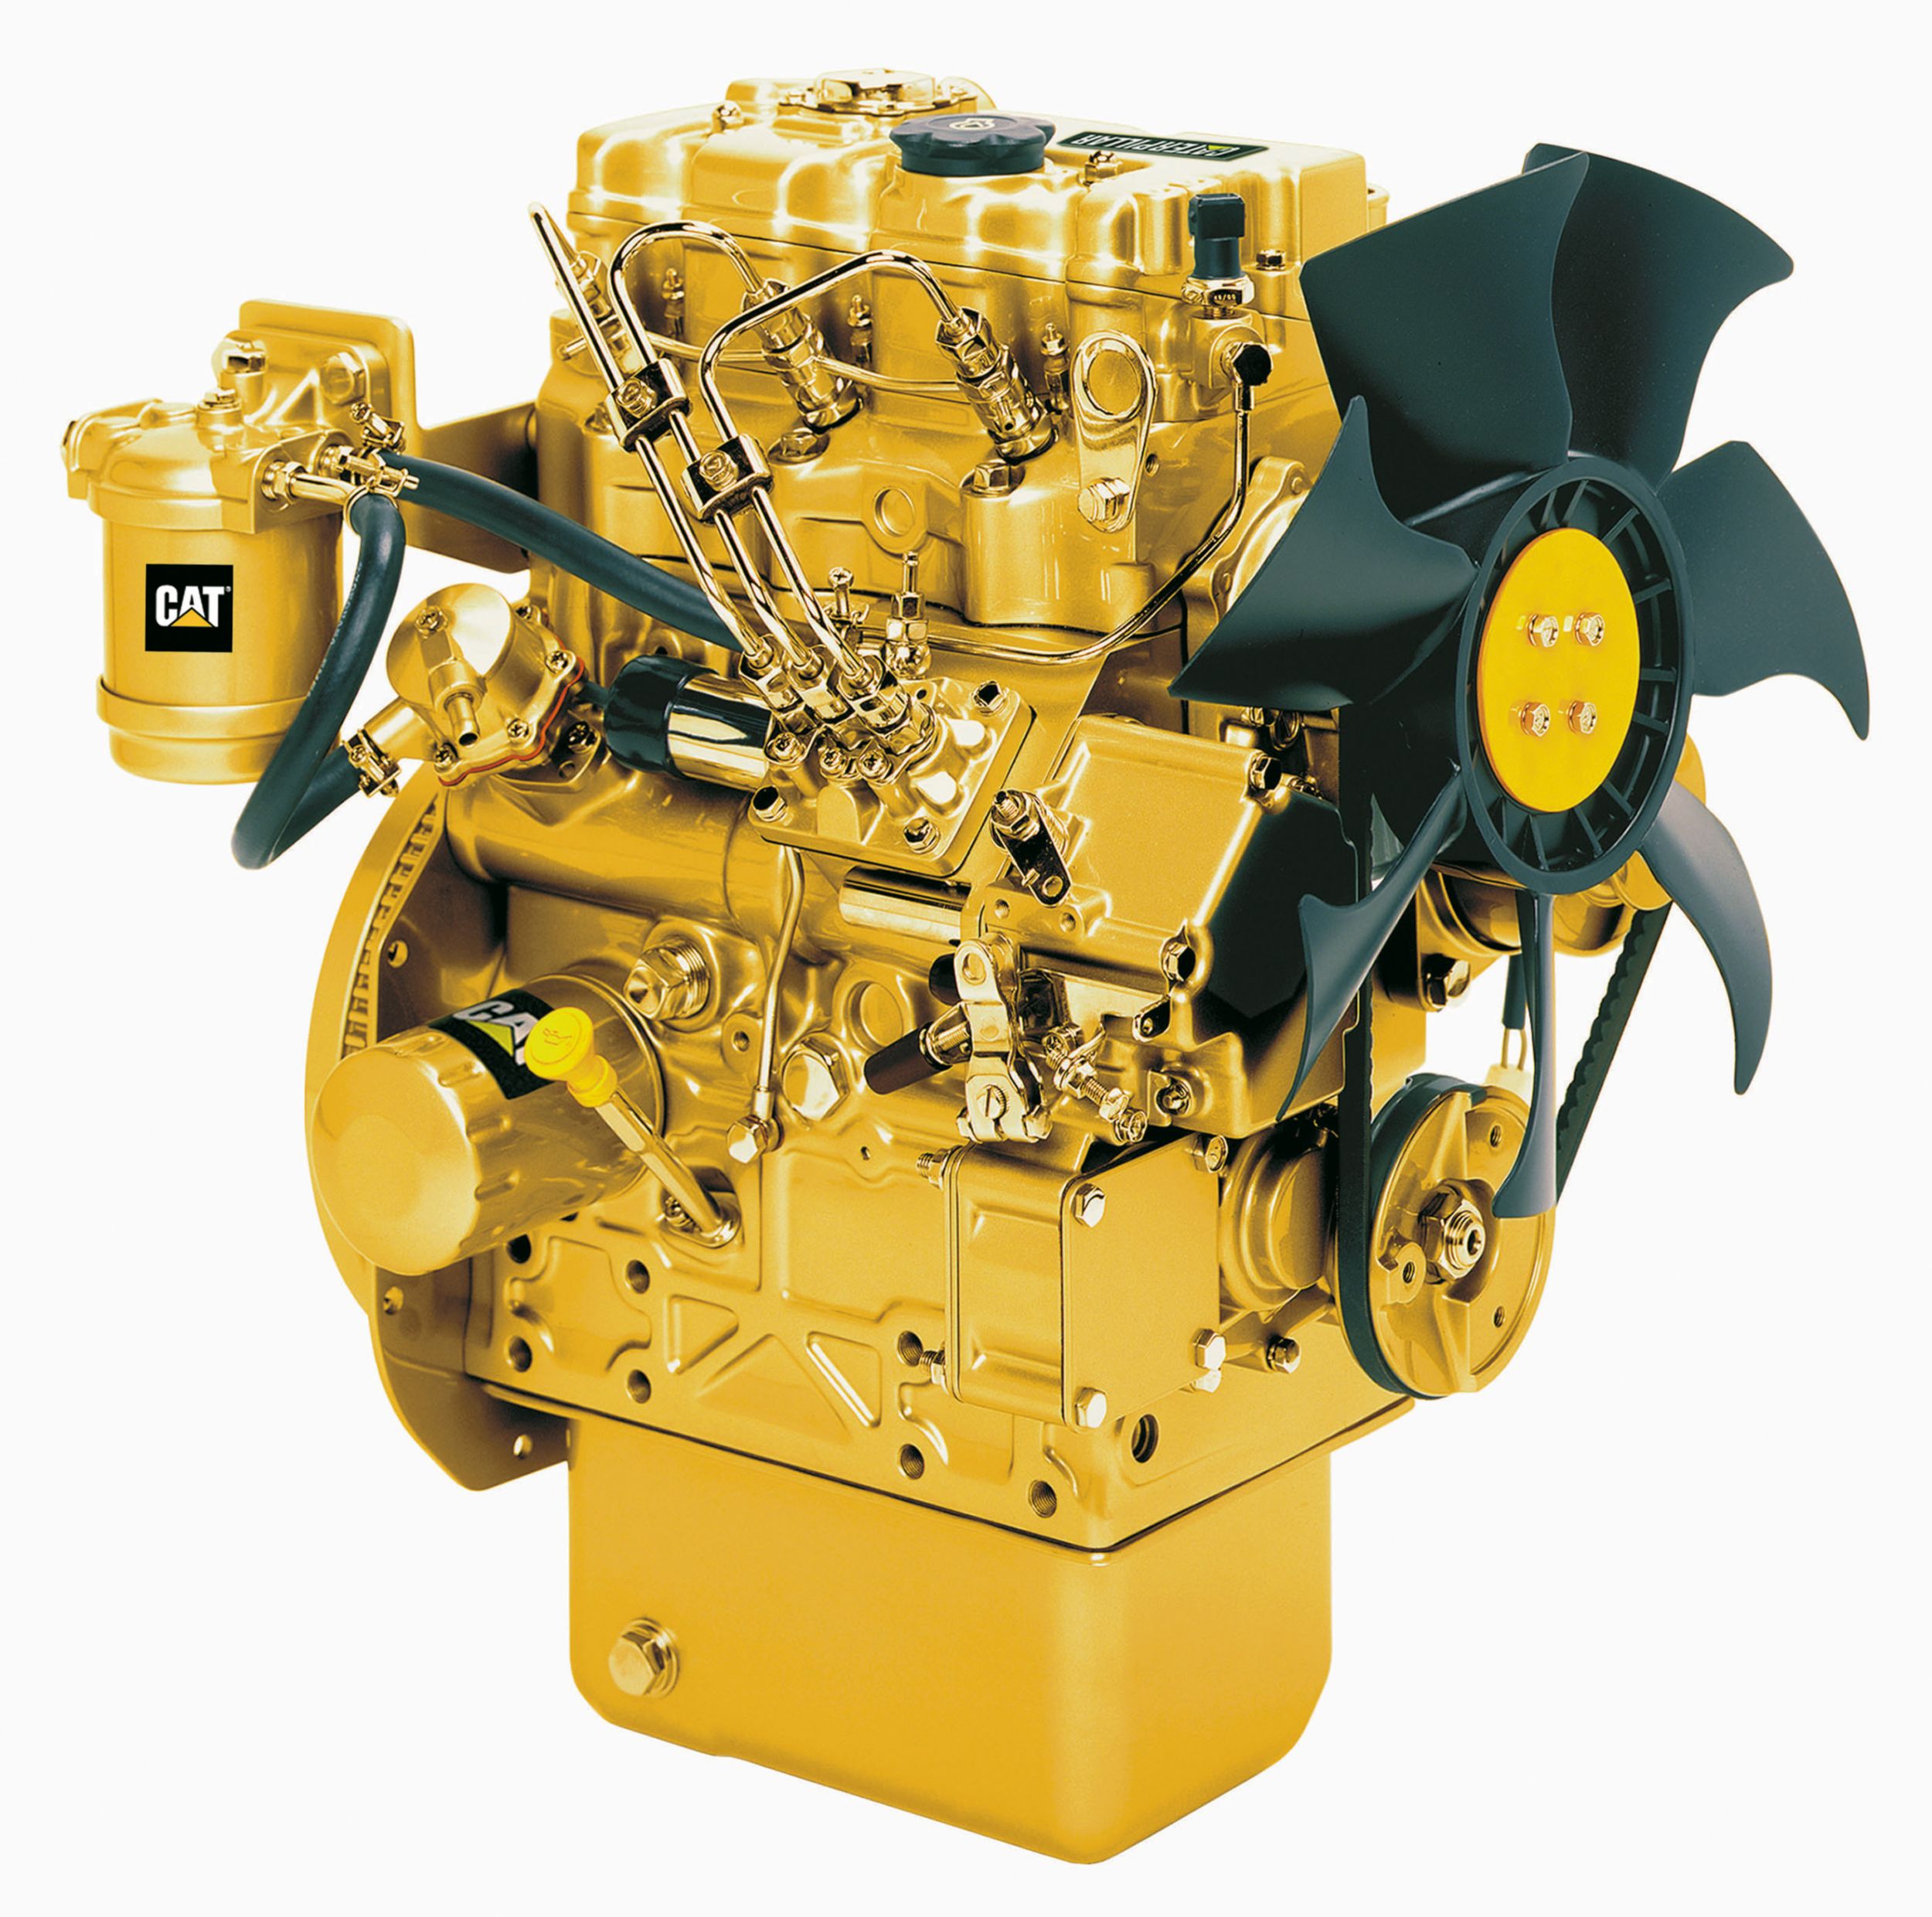 Motori diesel C1.1 LRC - Aree non regolamentate o con regolamentazione minima